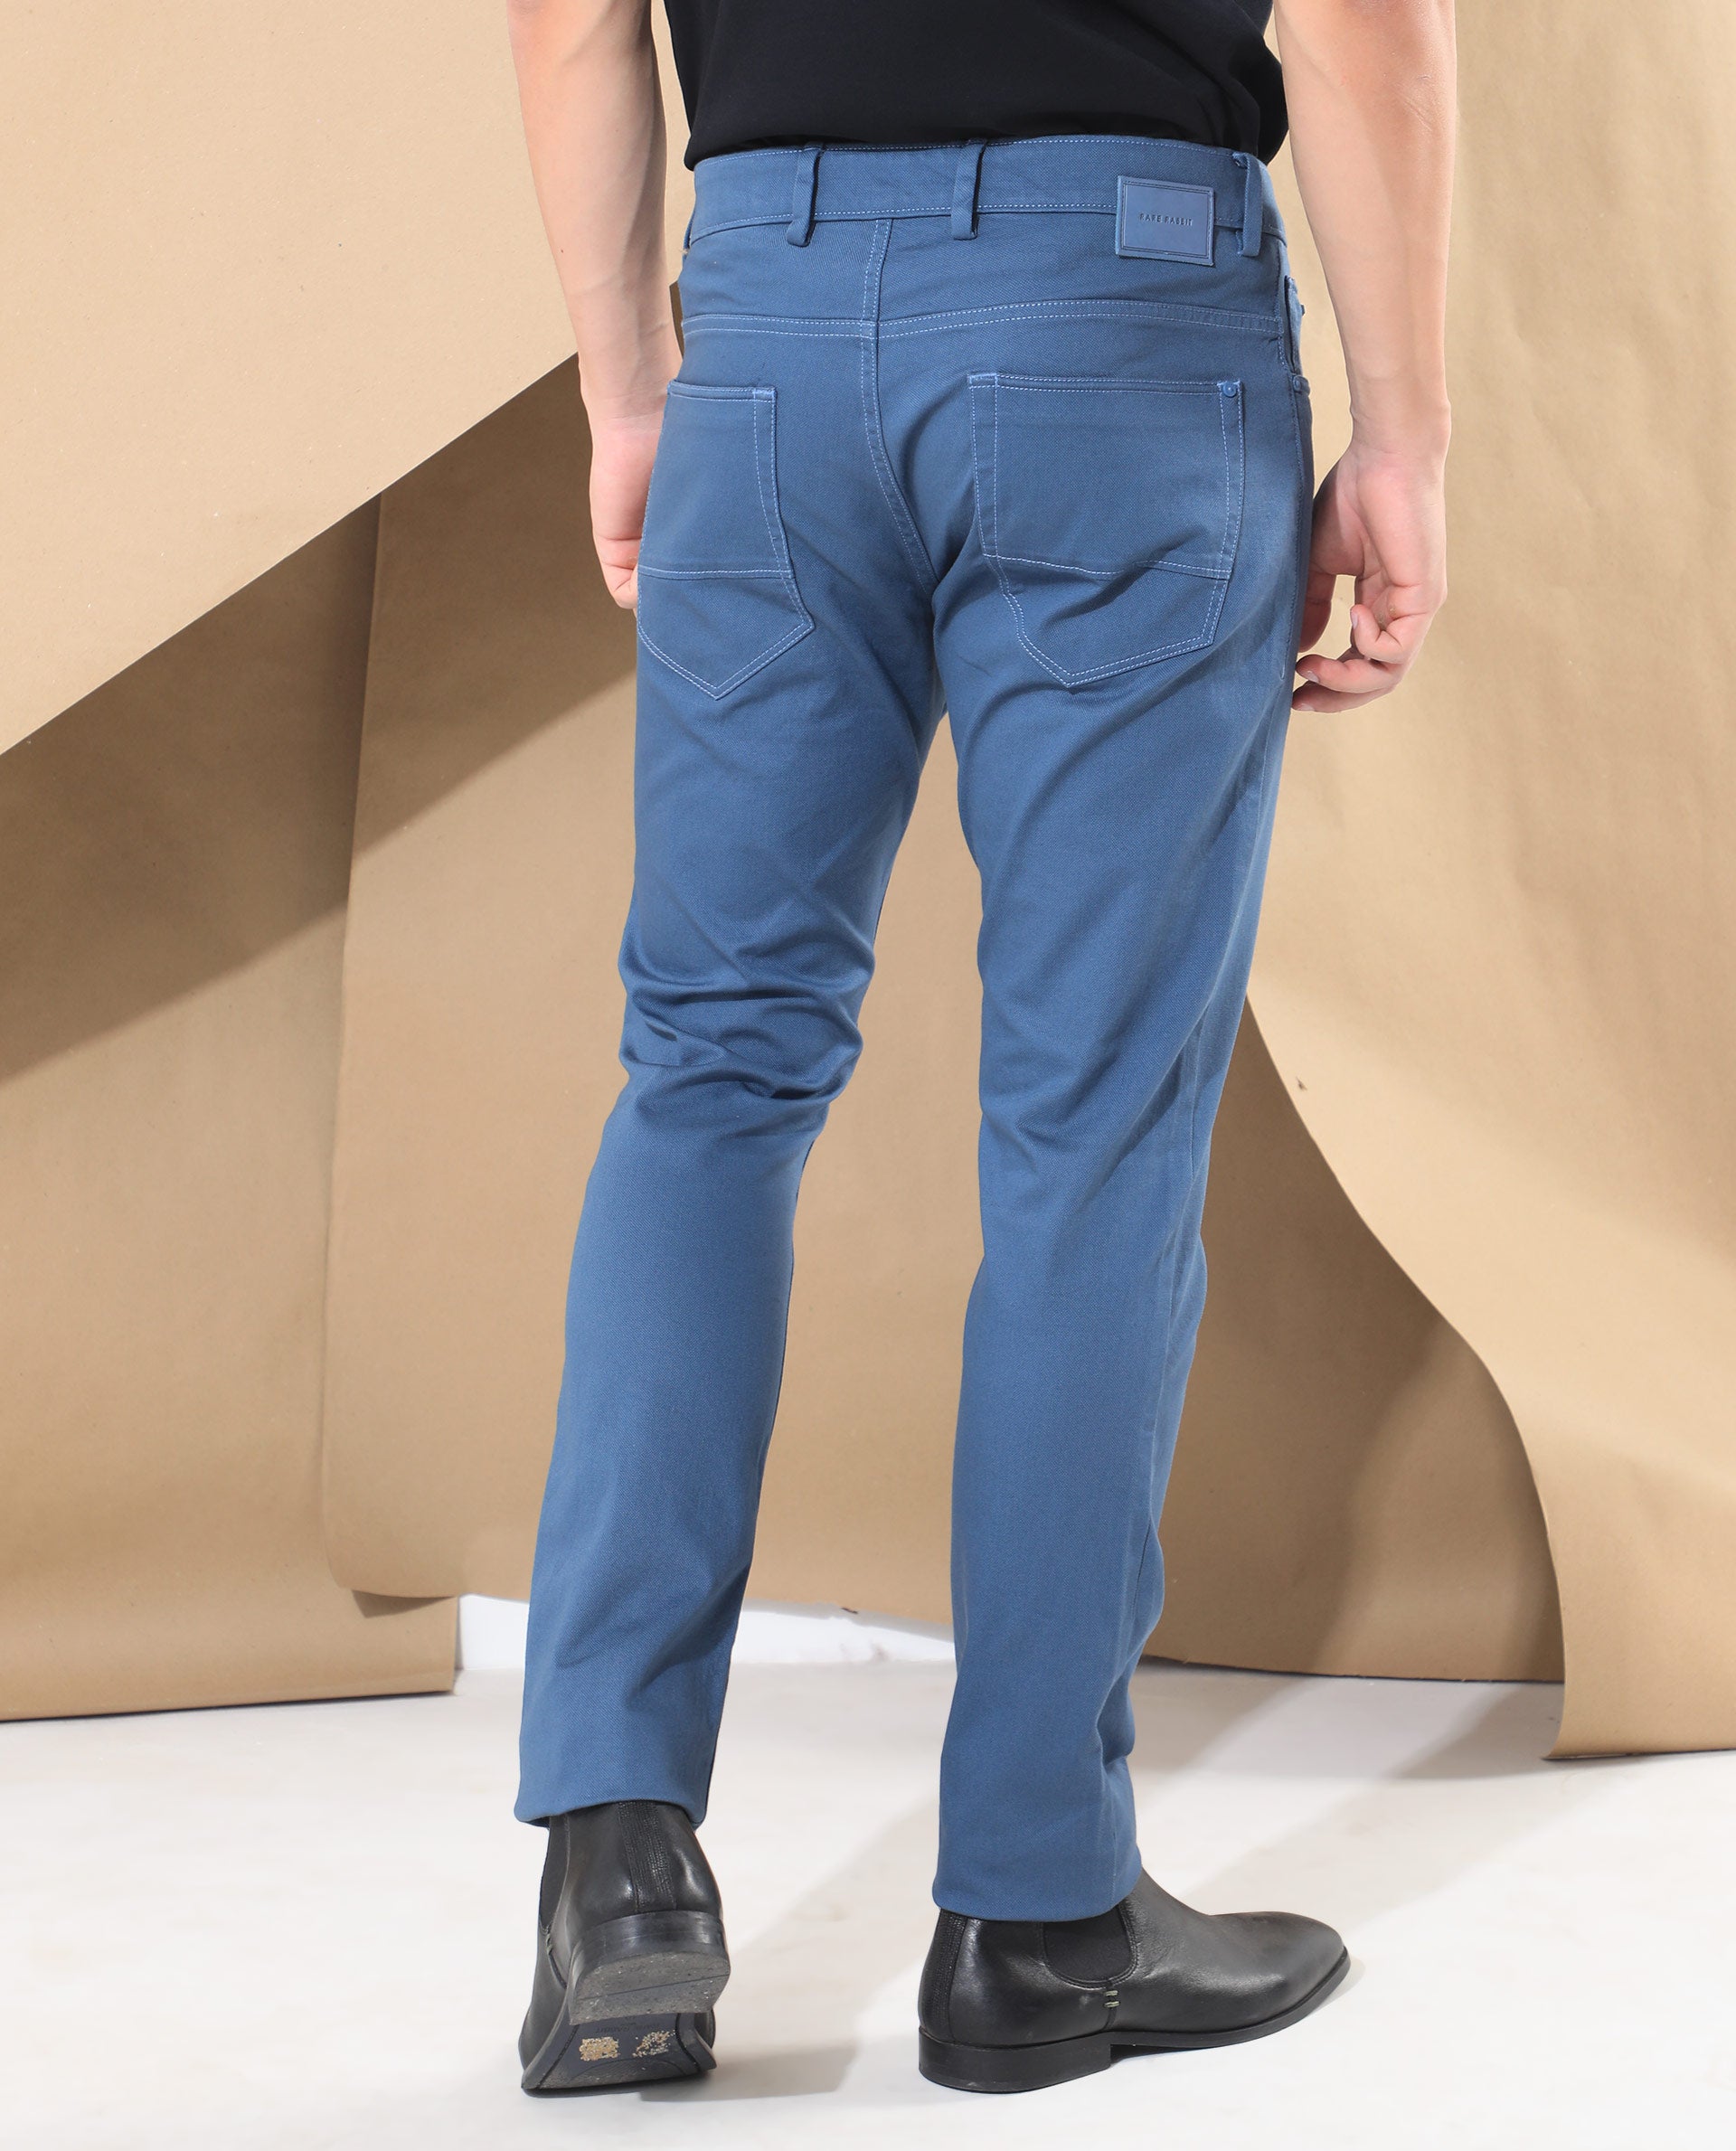 Powder Blue Pants  35 Pant Outfit Ideas That  Gasp  Arent Jeans   POPSUGAR Fashion Photo 8